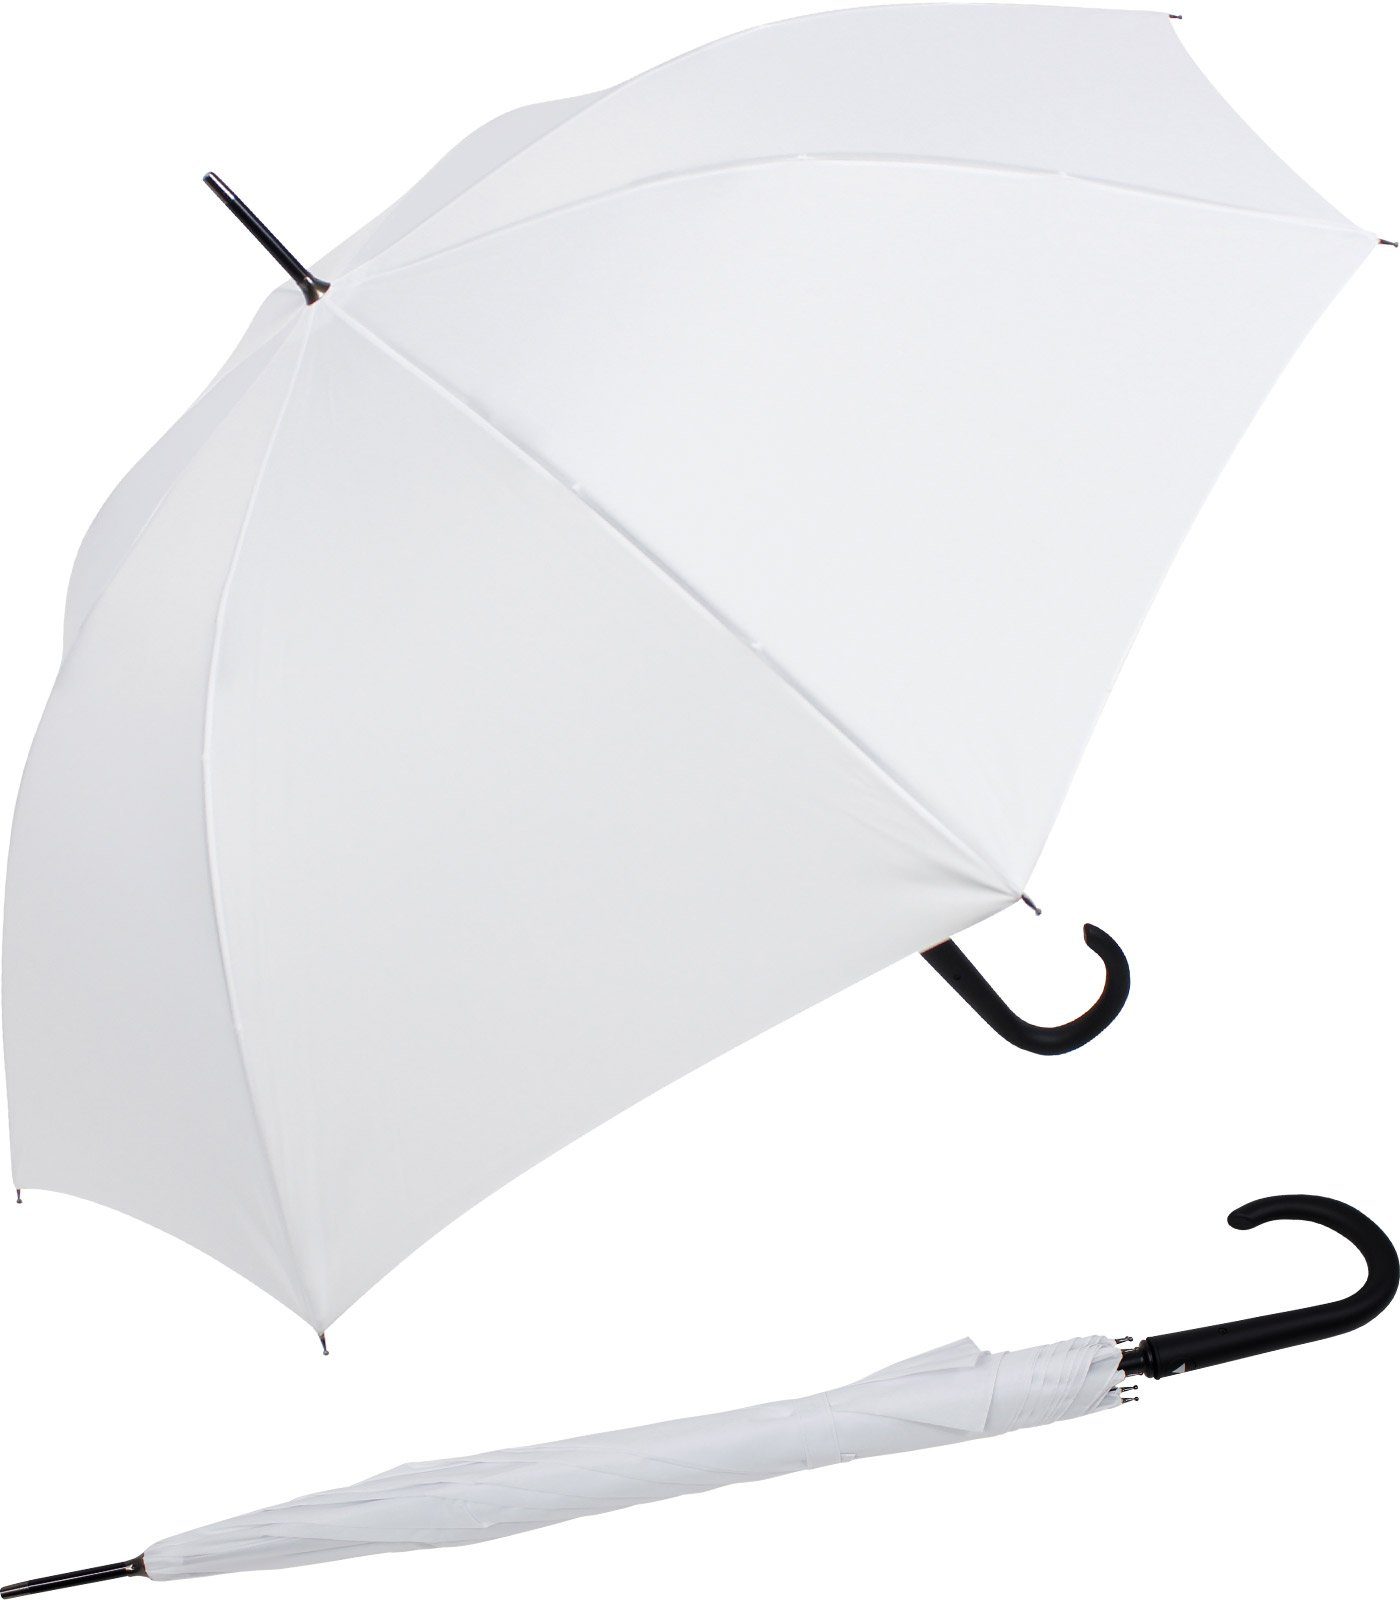 RS-Versand Langregenschirm großer stabiler Regenschirm mit Auf-Automatik, Stahl-Fiberglas-Gestell, integrierter Auslöseknopf weiß